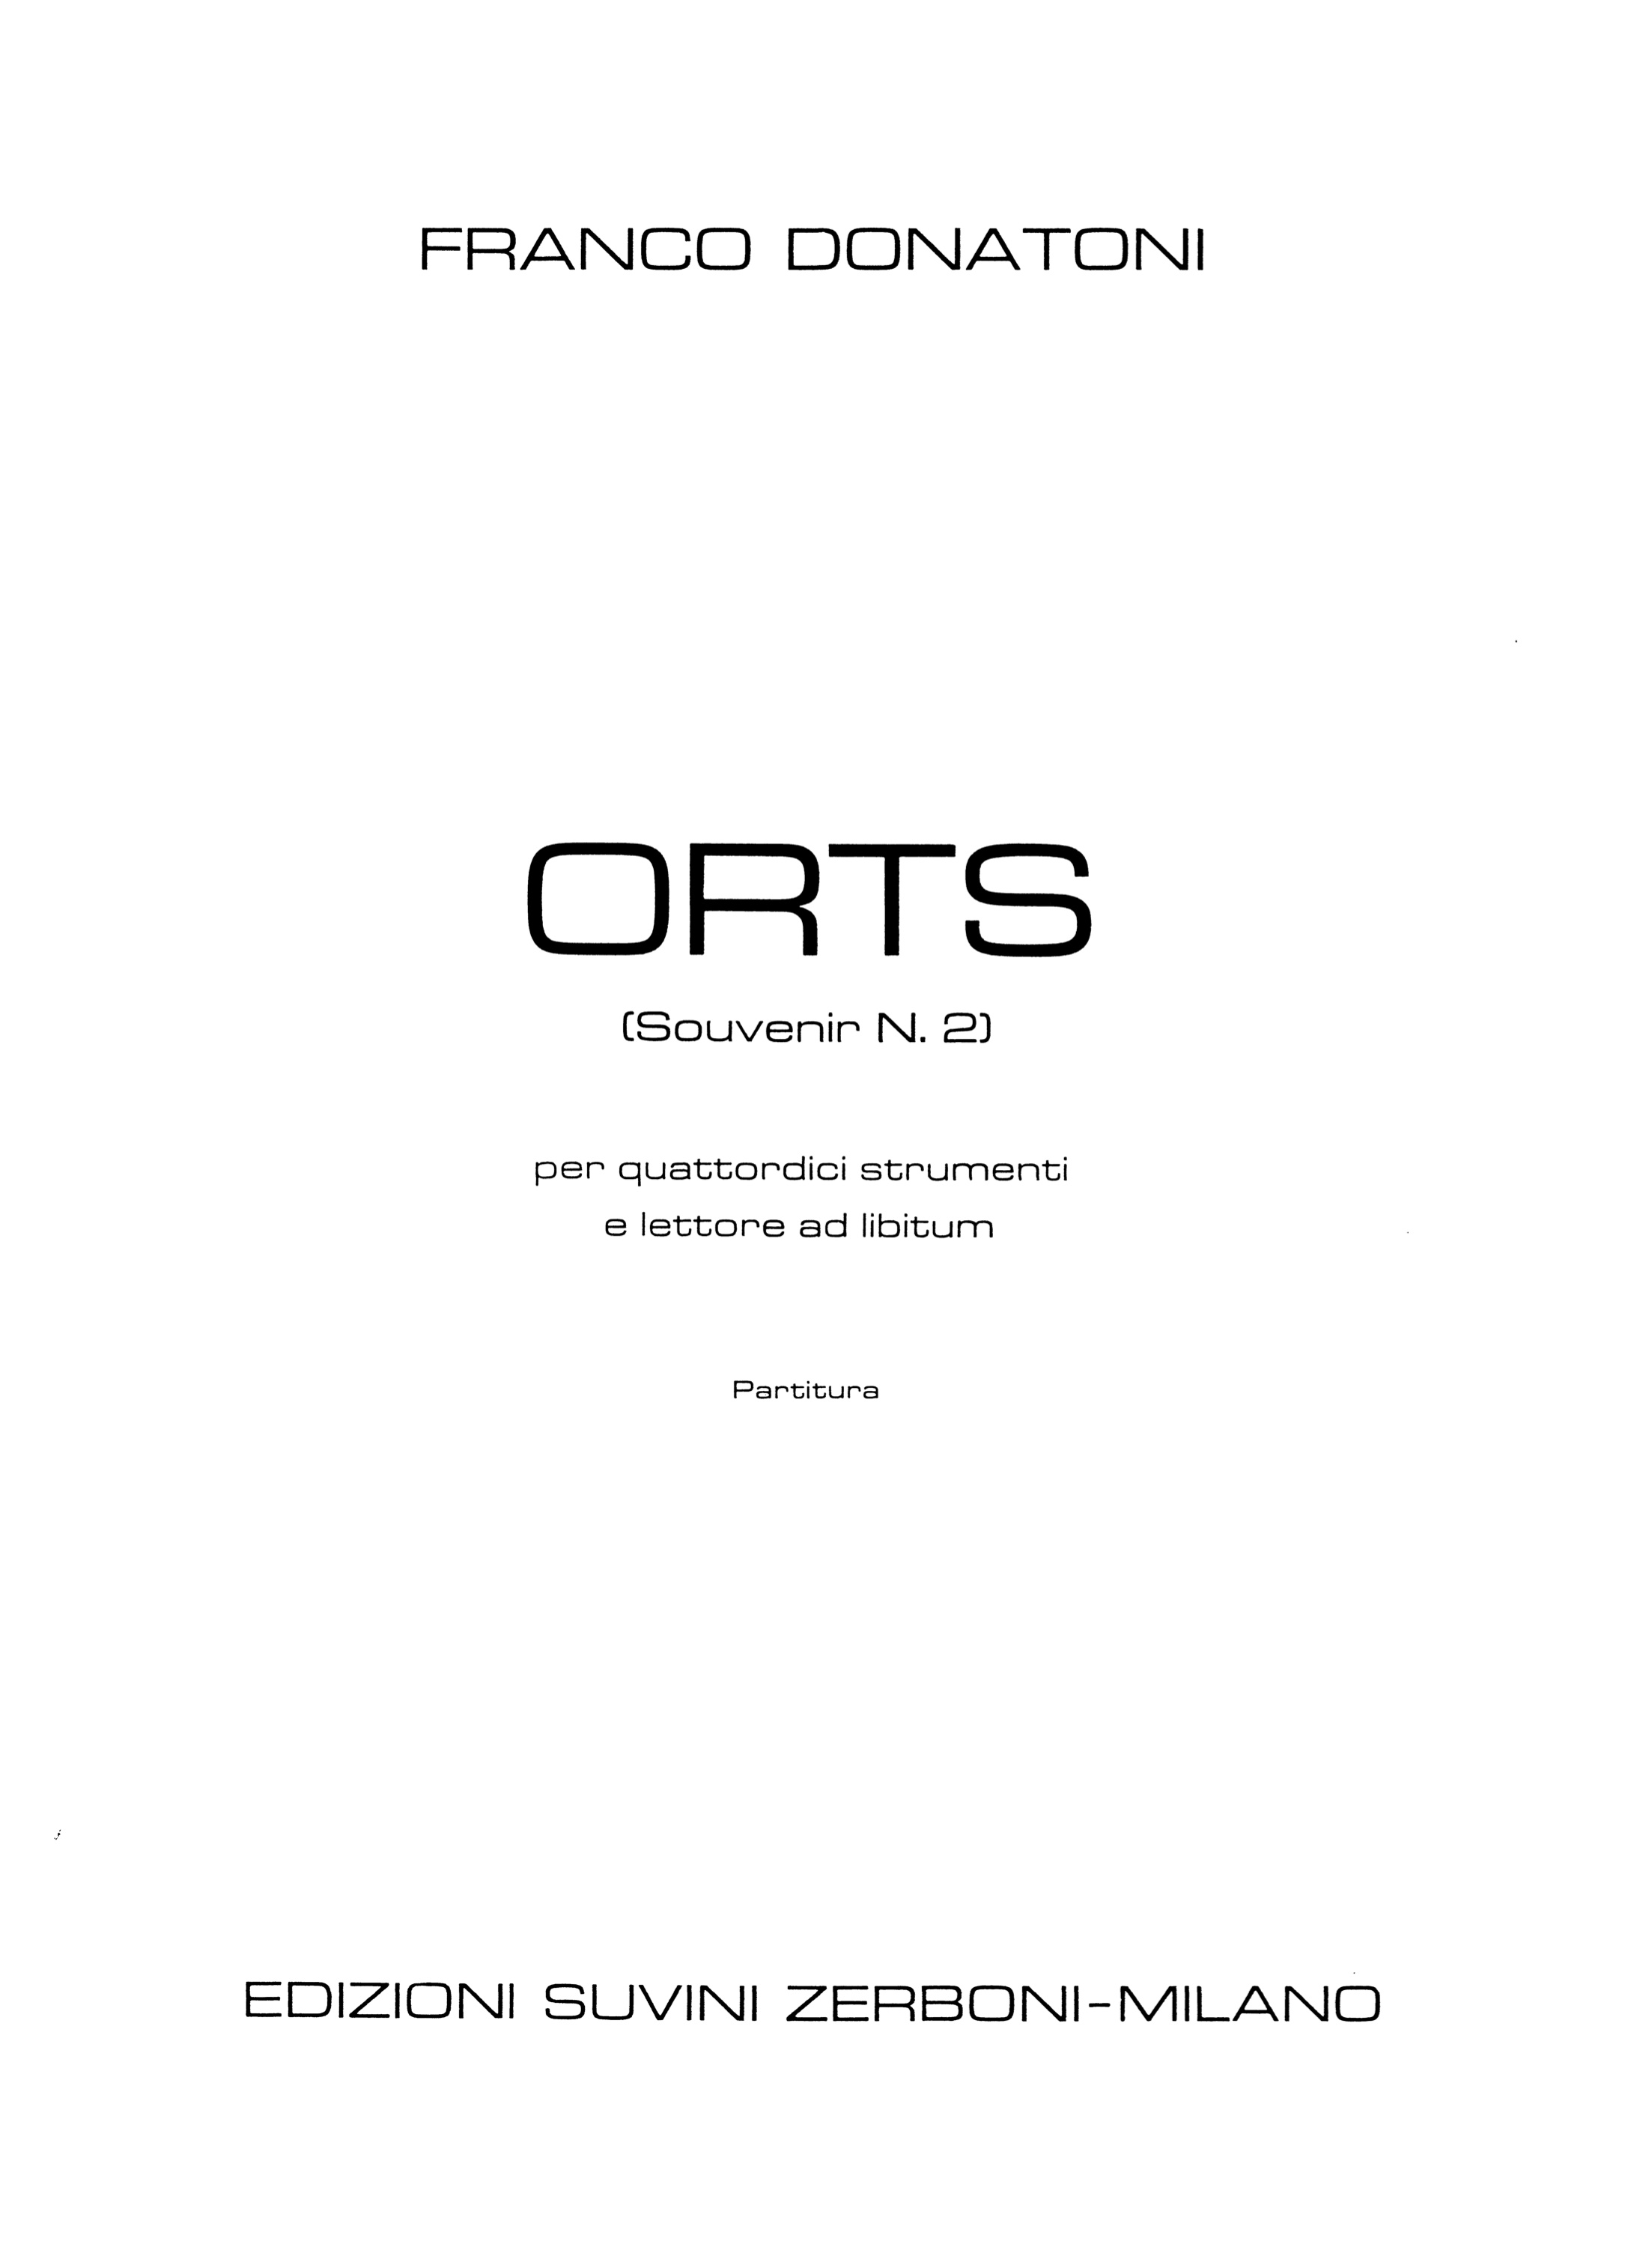 ORTS_Donatoni 1